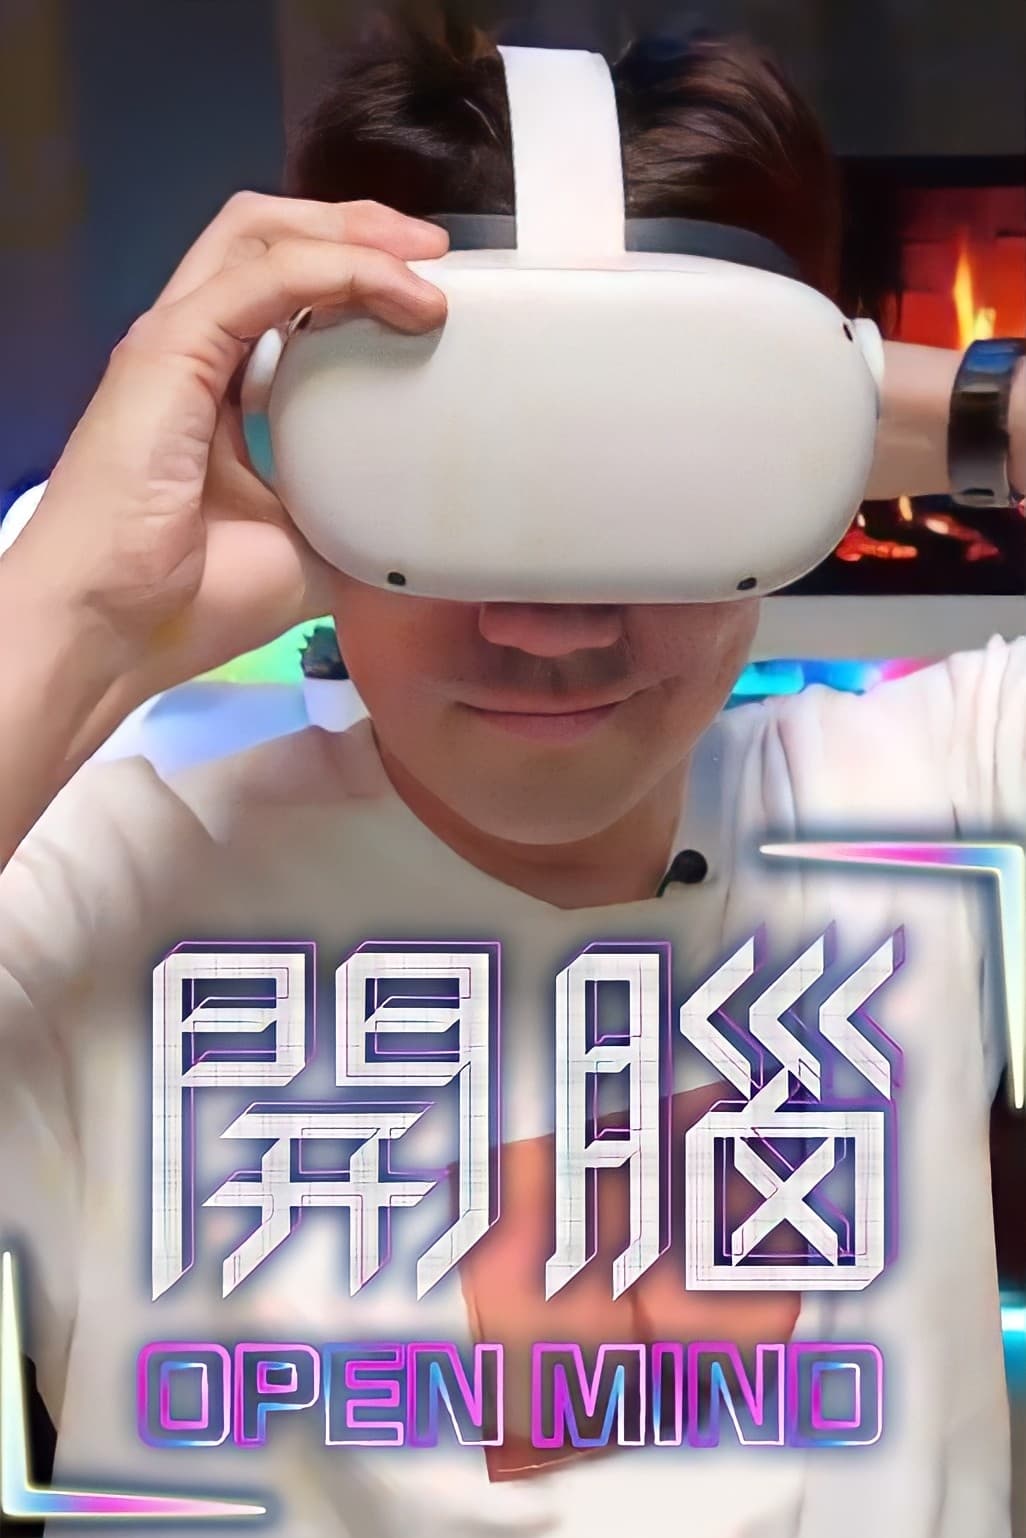 開腦 TV Shows About Virtual Reality